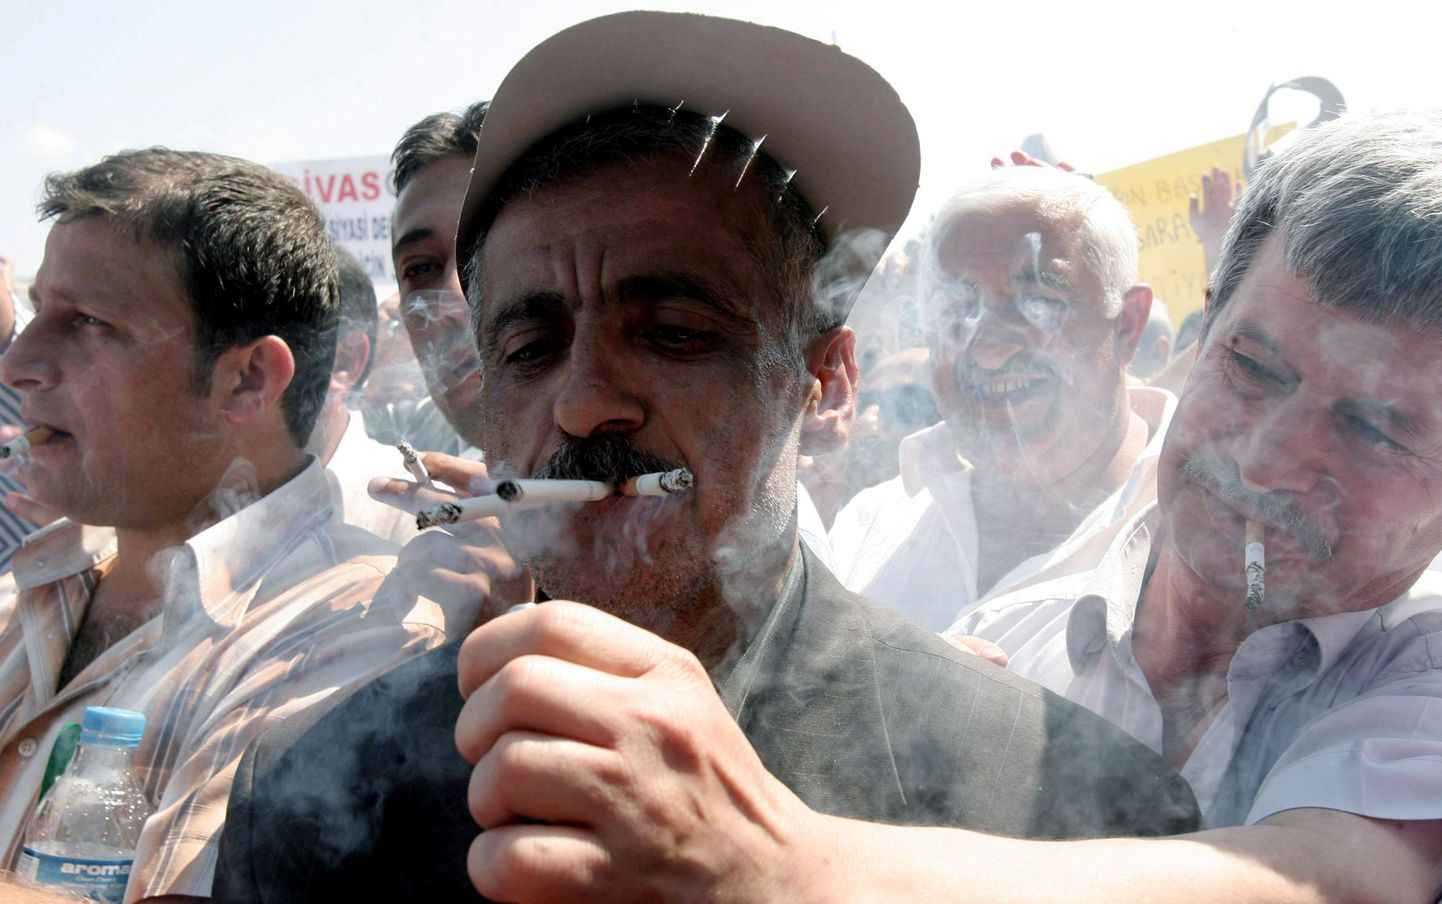 Suvel protestisid sigaretikeelu vastu suitsulembesed türklased. Teaduslikud tõendid passiivse suitsetamise kahjulikkusest võivad nende meelt muuta.